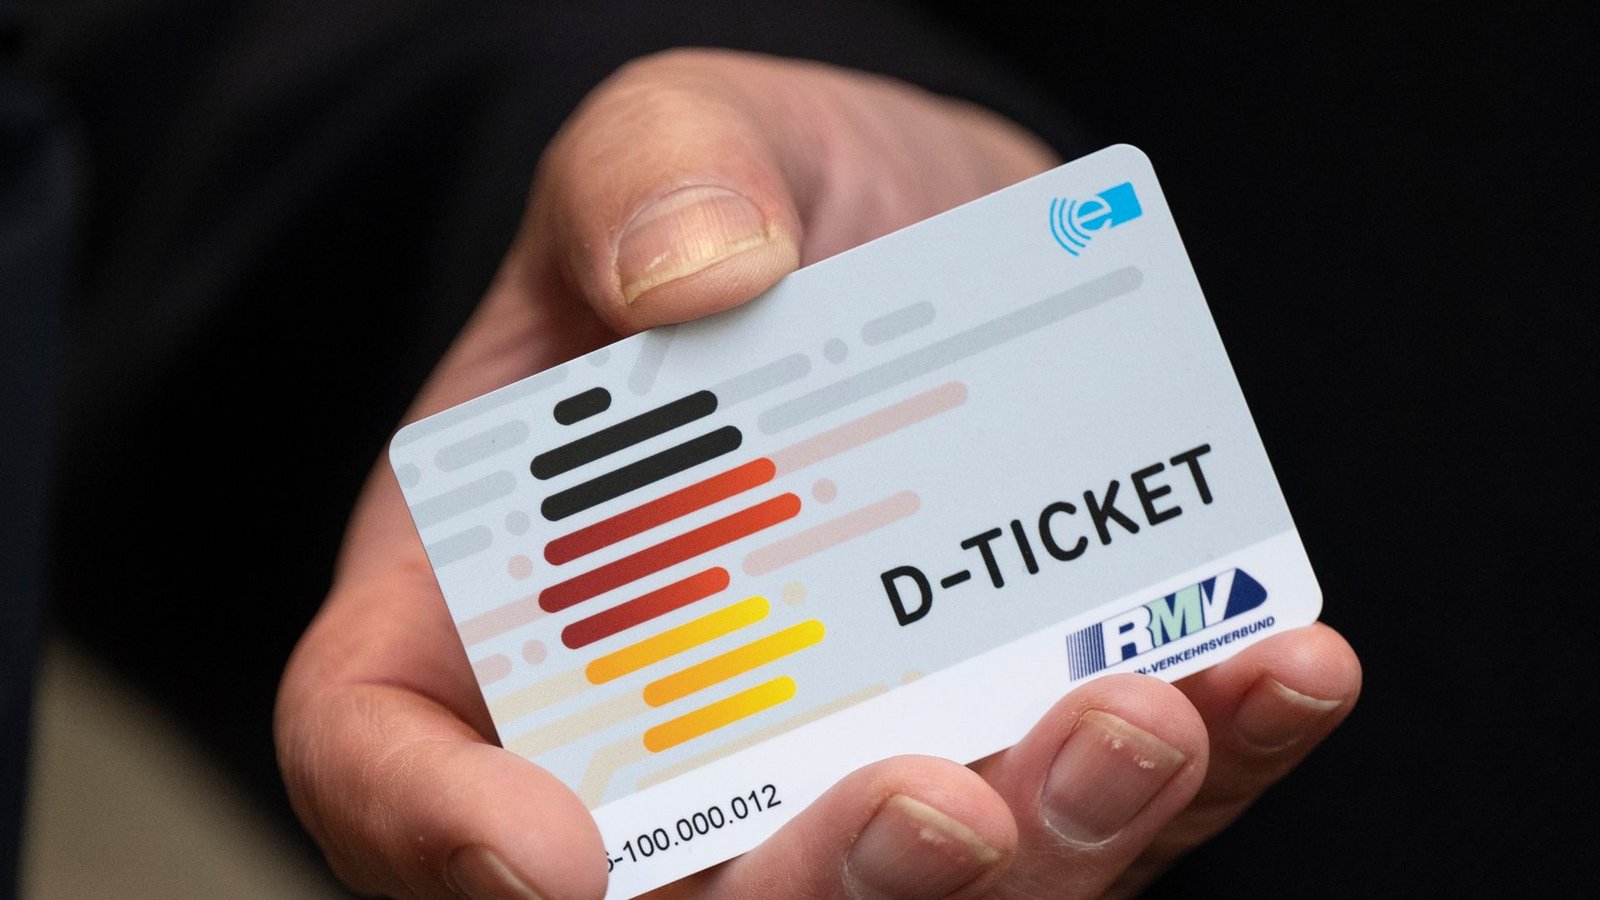 Das Ticket ermöglicht bundesweite Fahrten in Bussen und Bahnen des ÖPNV für 49 Euro pro Monat.Foto: Boris Roessler/dpa